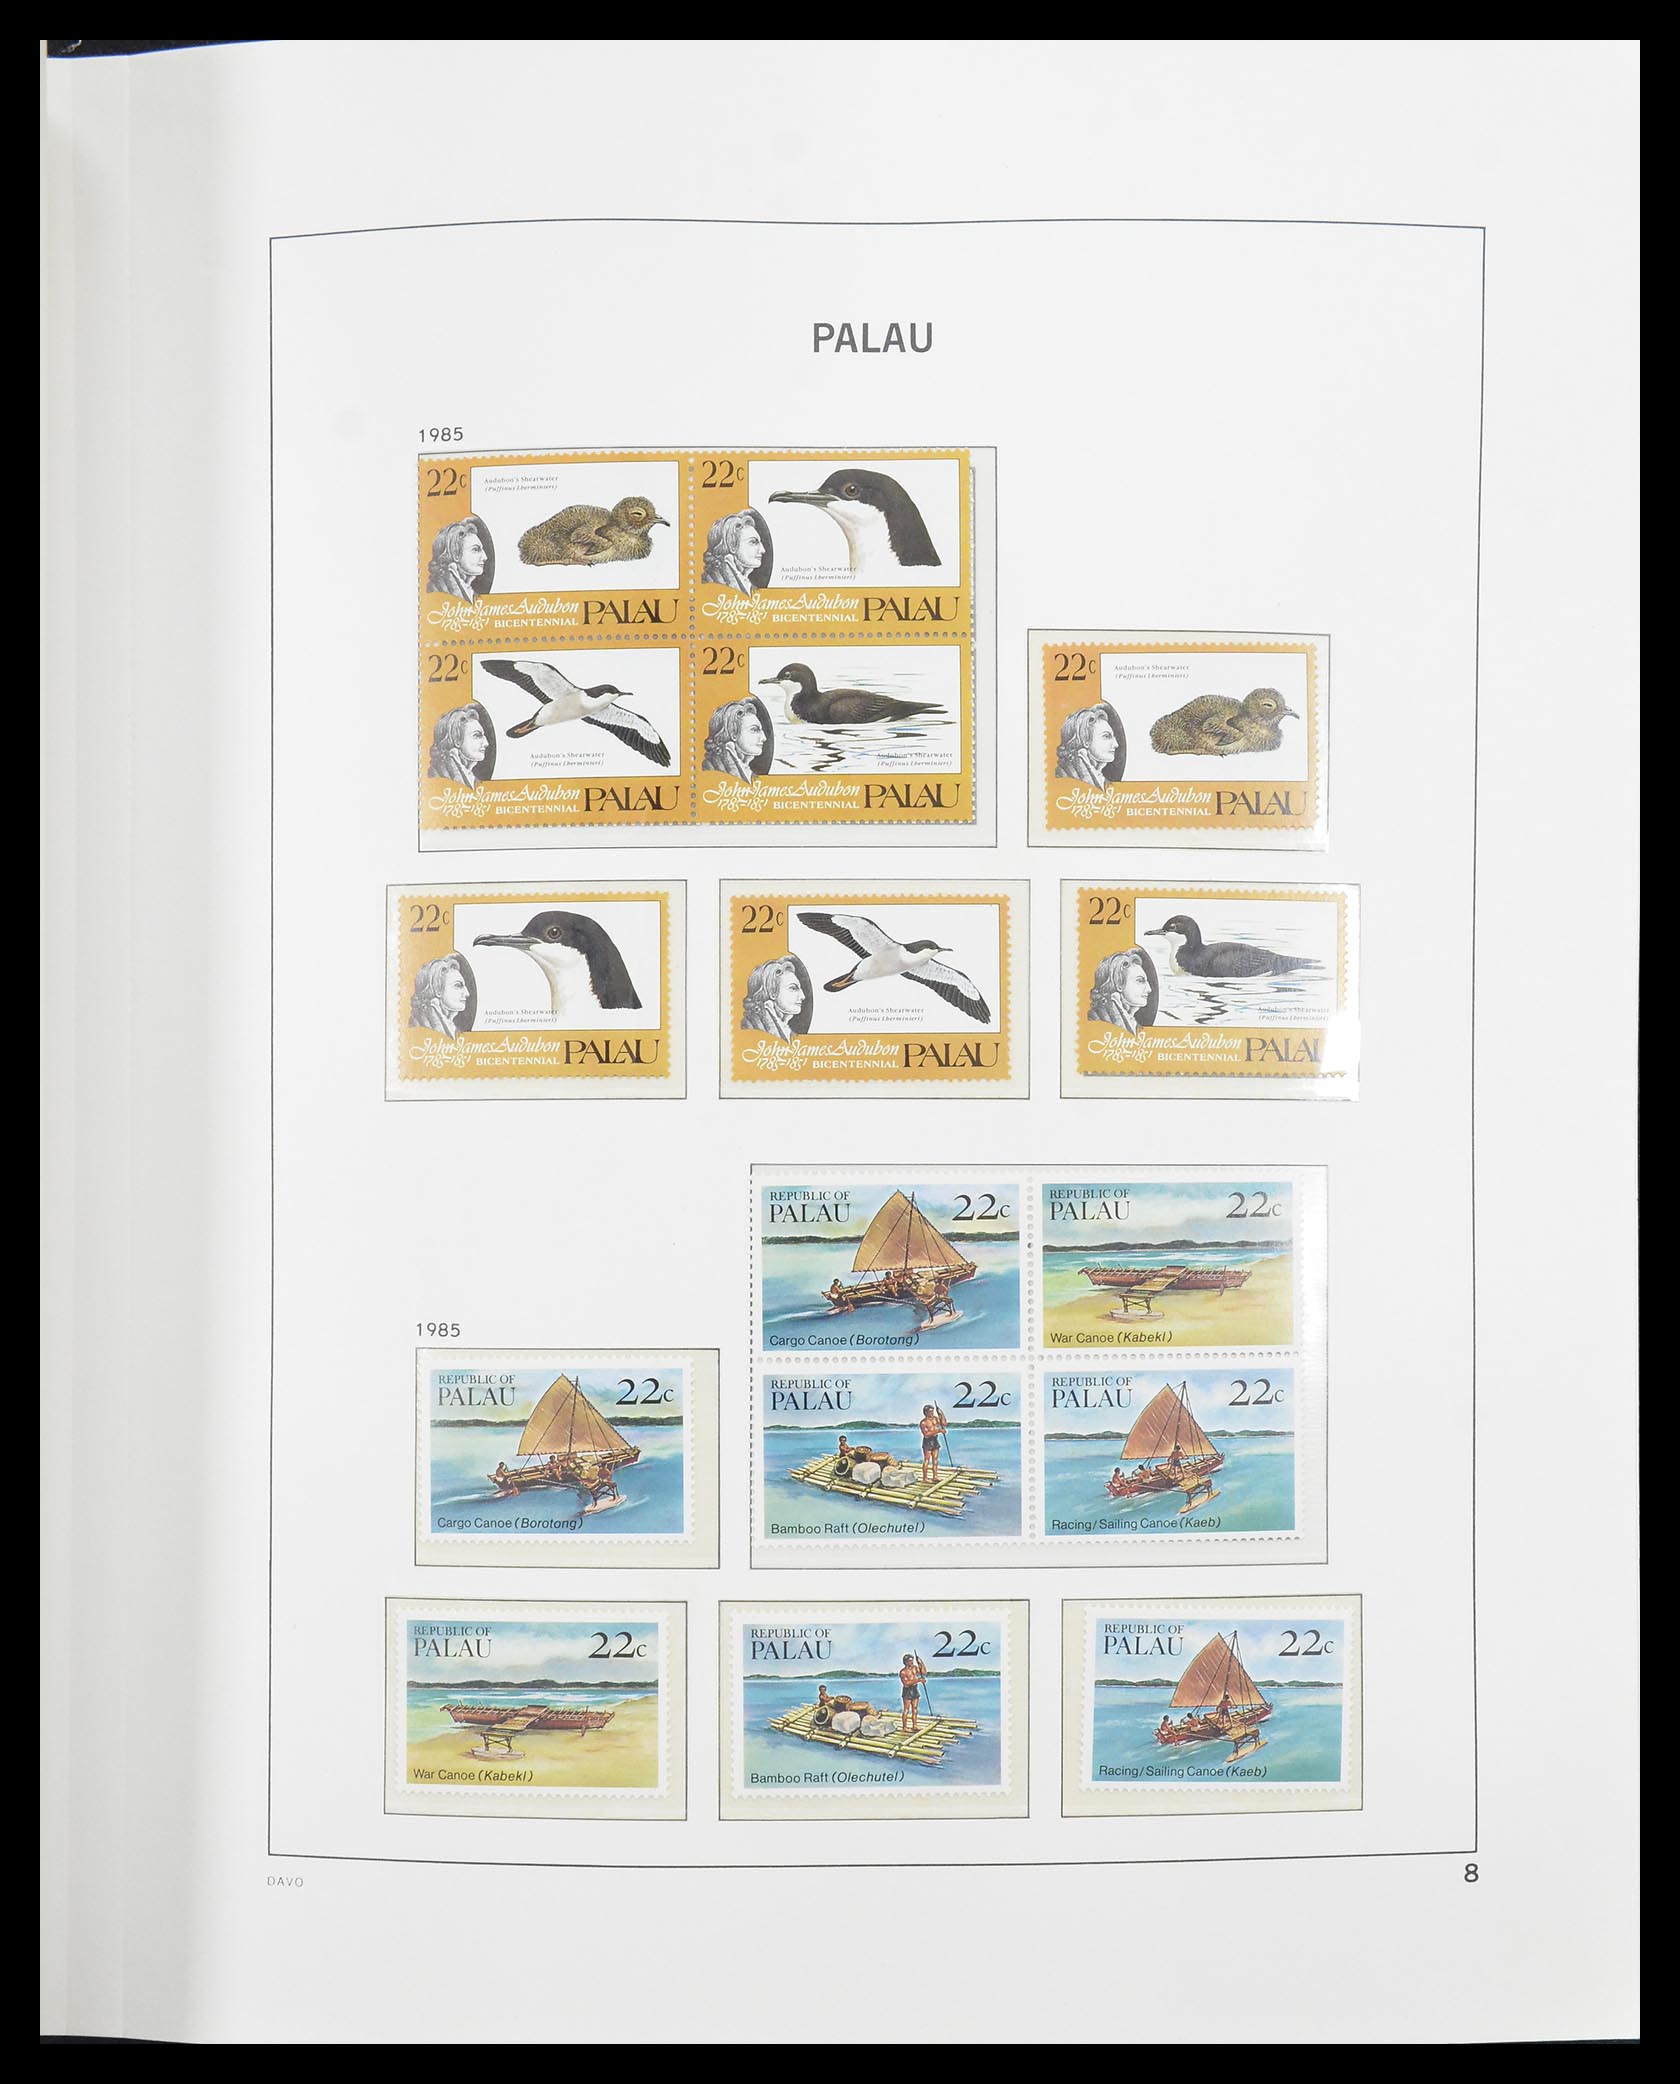 31380 010 - 31380 Palau 1983-2008.